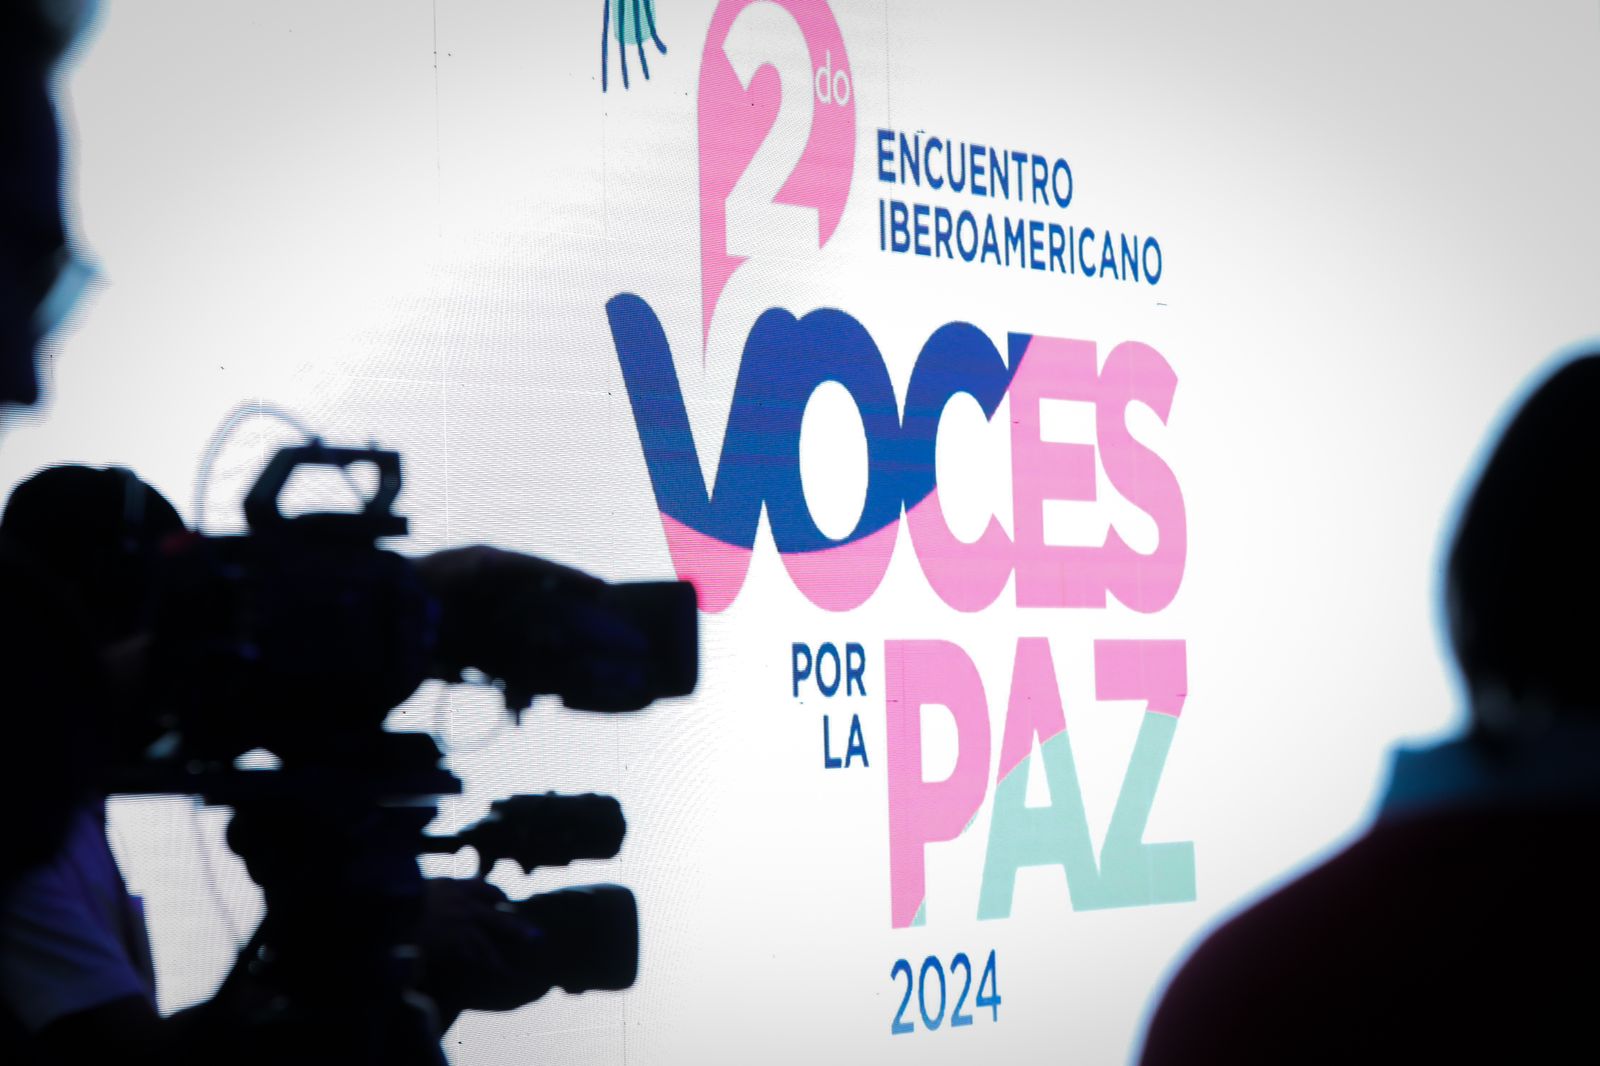 Inauguran el 2º encuentro Iberoamericano “Voces y Periodismo por la Paz”